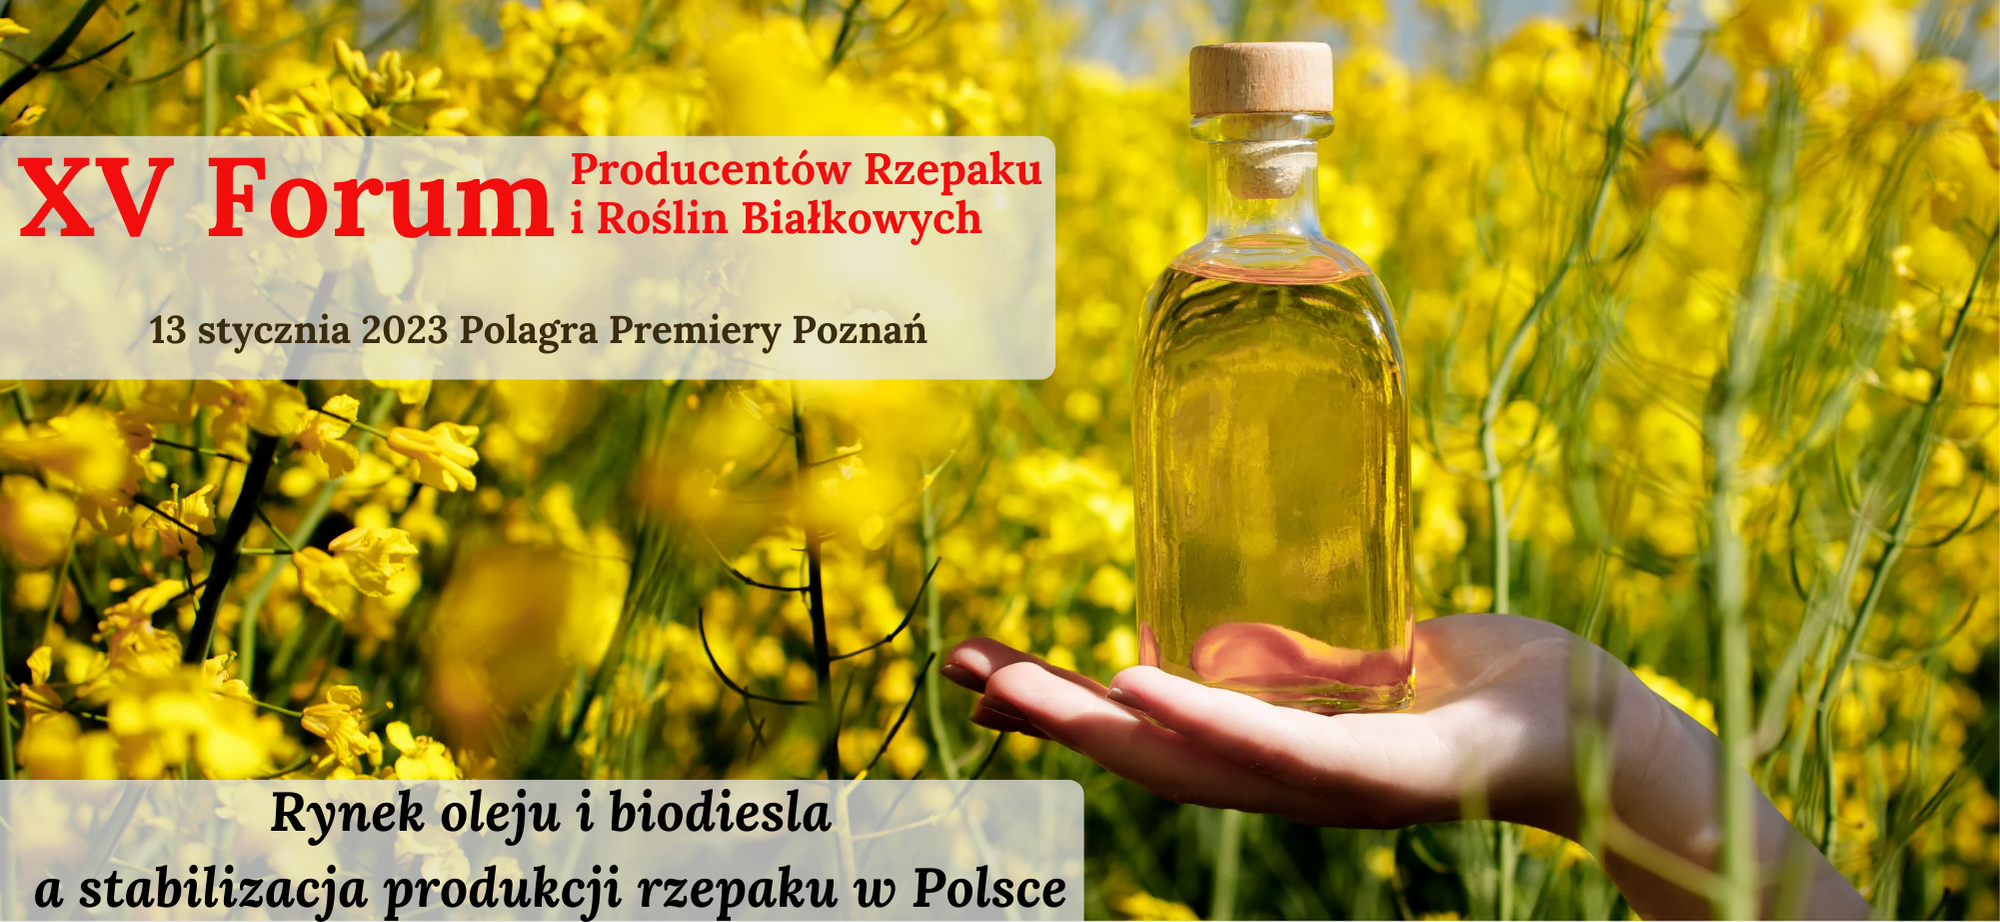 XV Forum Producentów Rzepaku i Roślin Białkowych